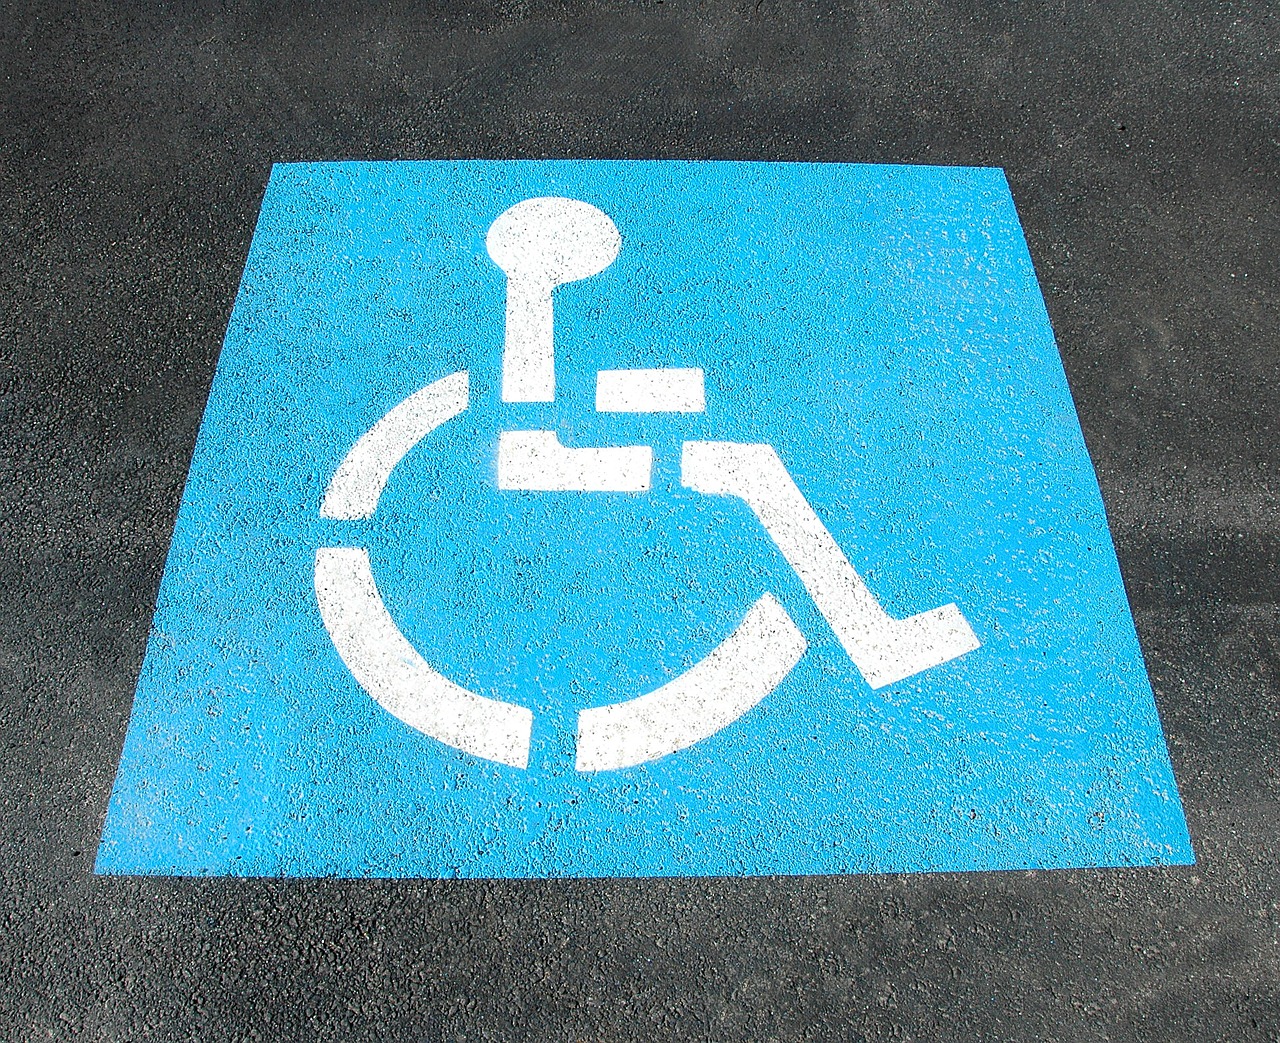 Foto do símbolo da acessibilidade pintado no chão.